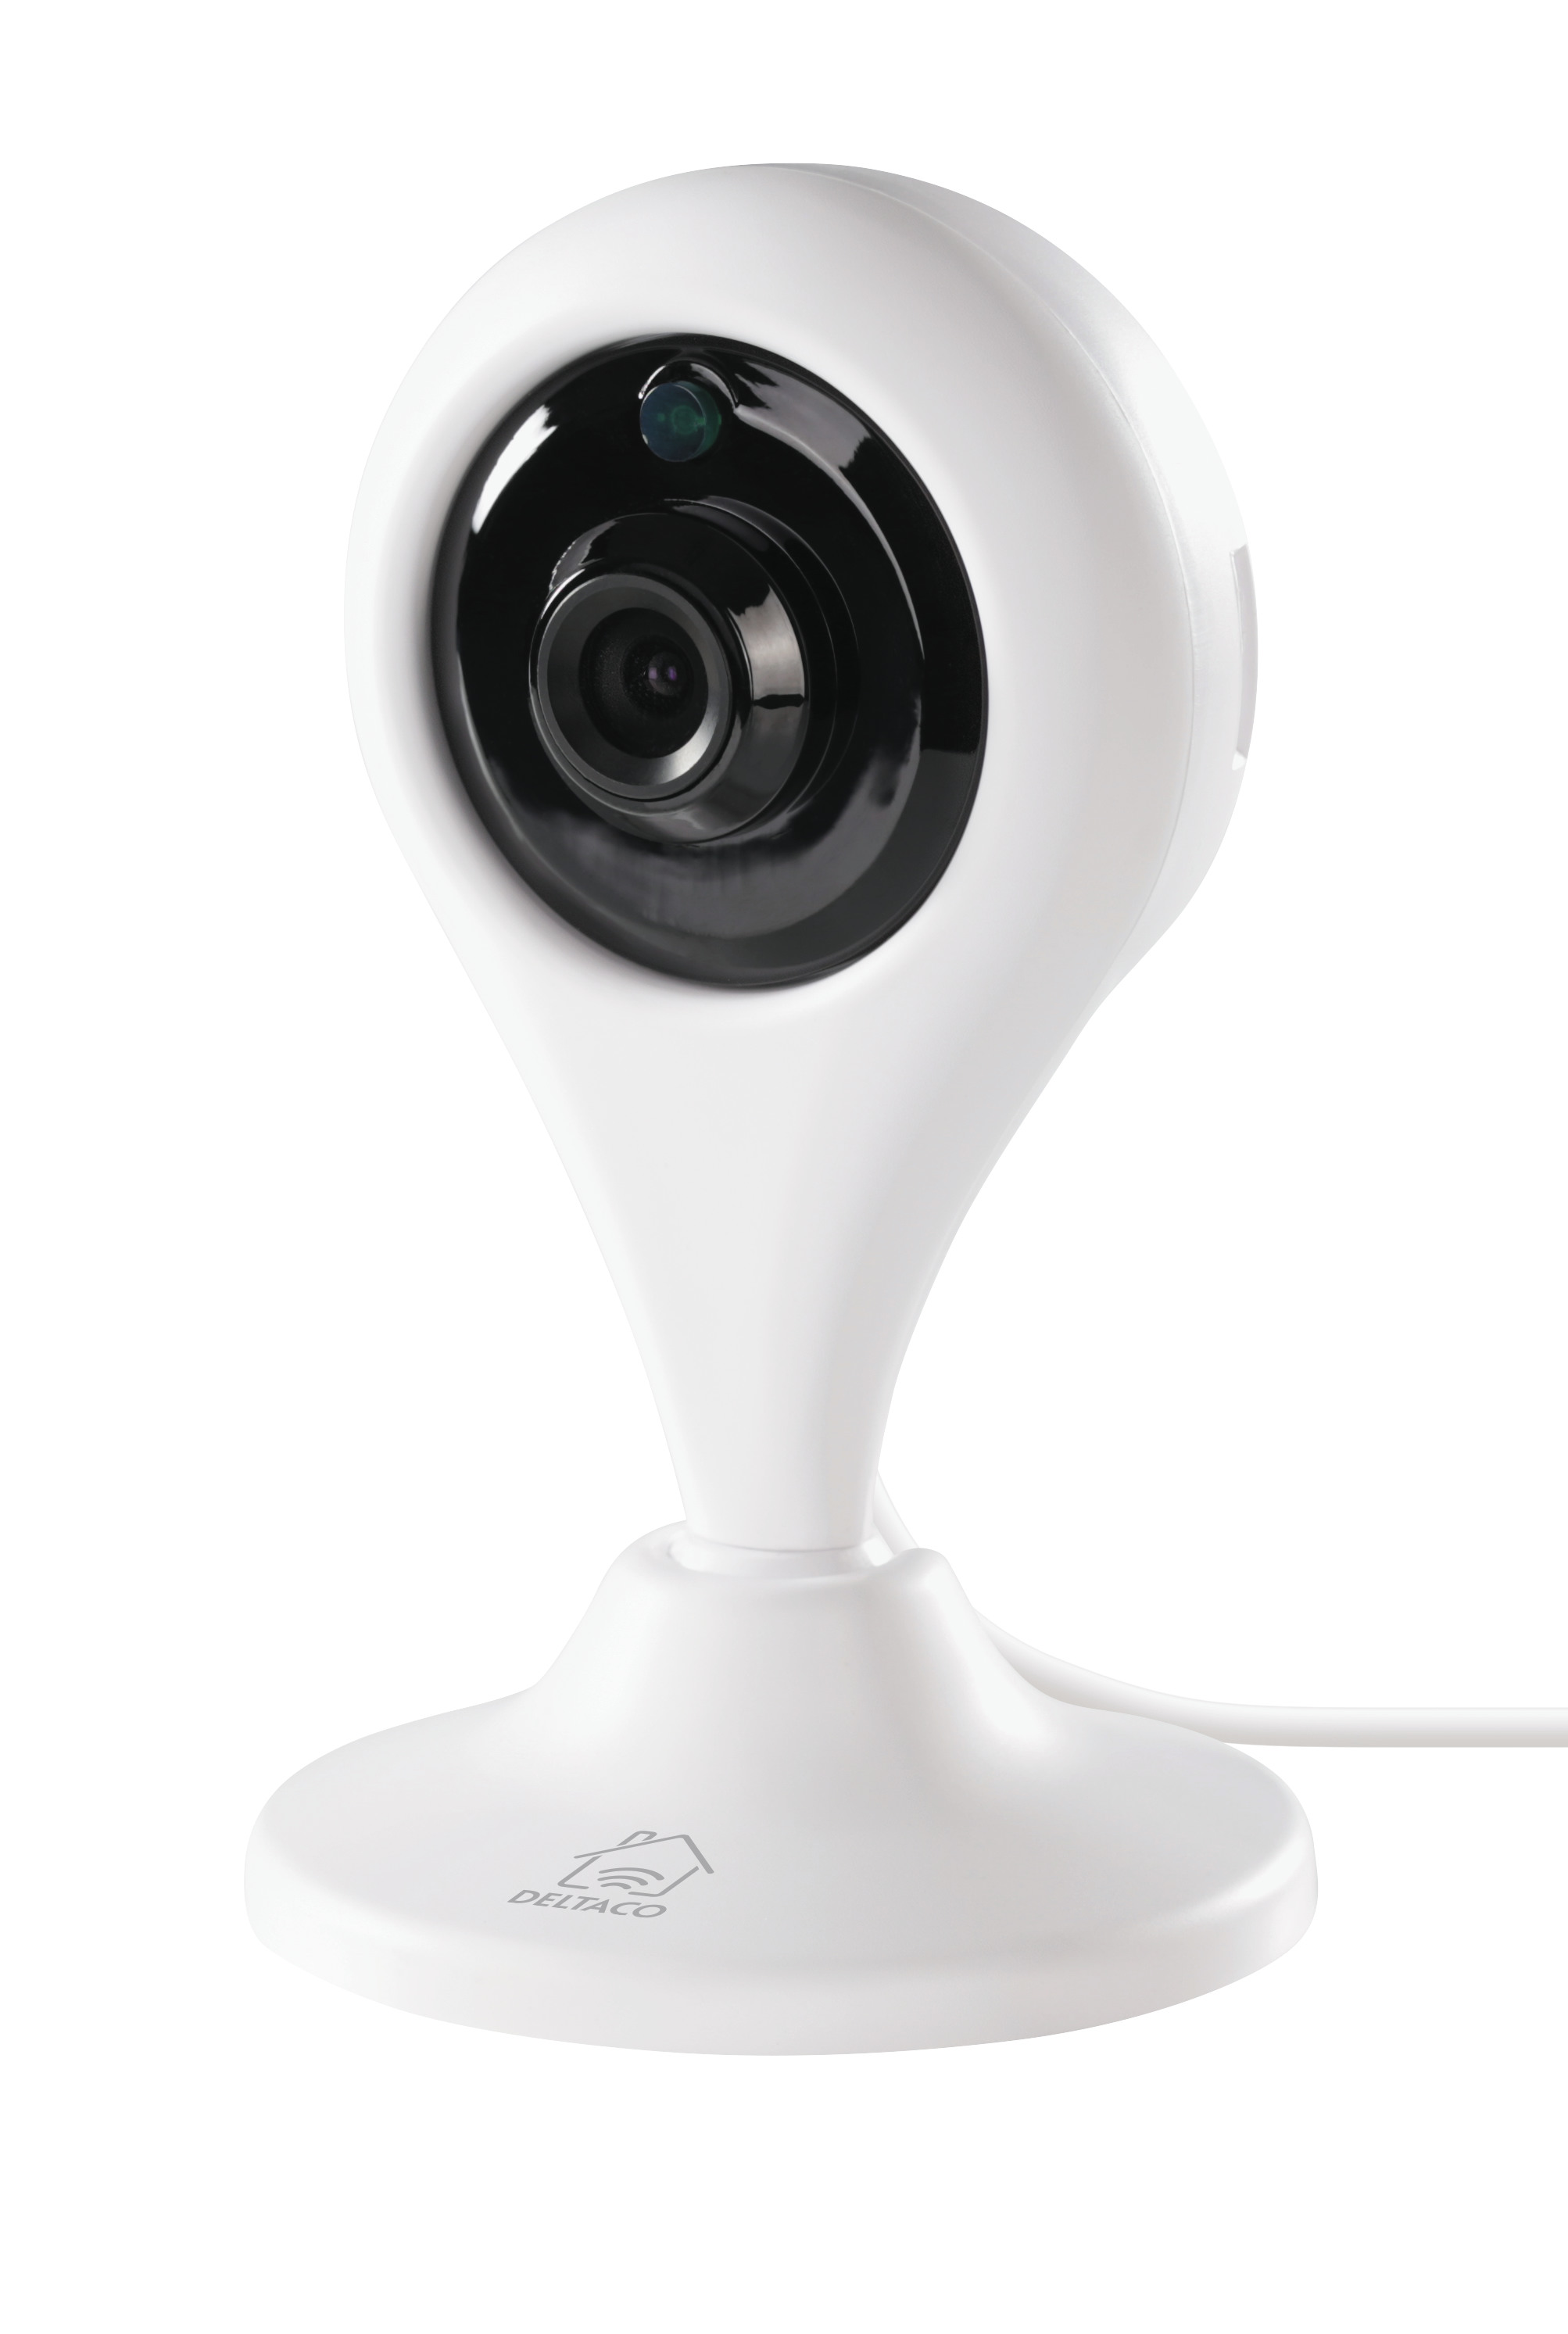 DELTACO Smart Network Camera 720p SHIPC01 indoor, white, WiFi 2.4 GHz